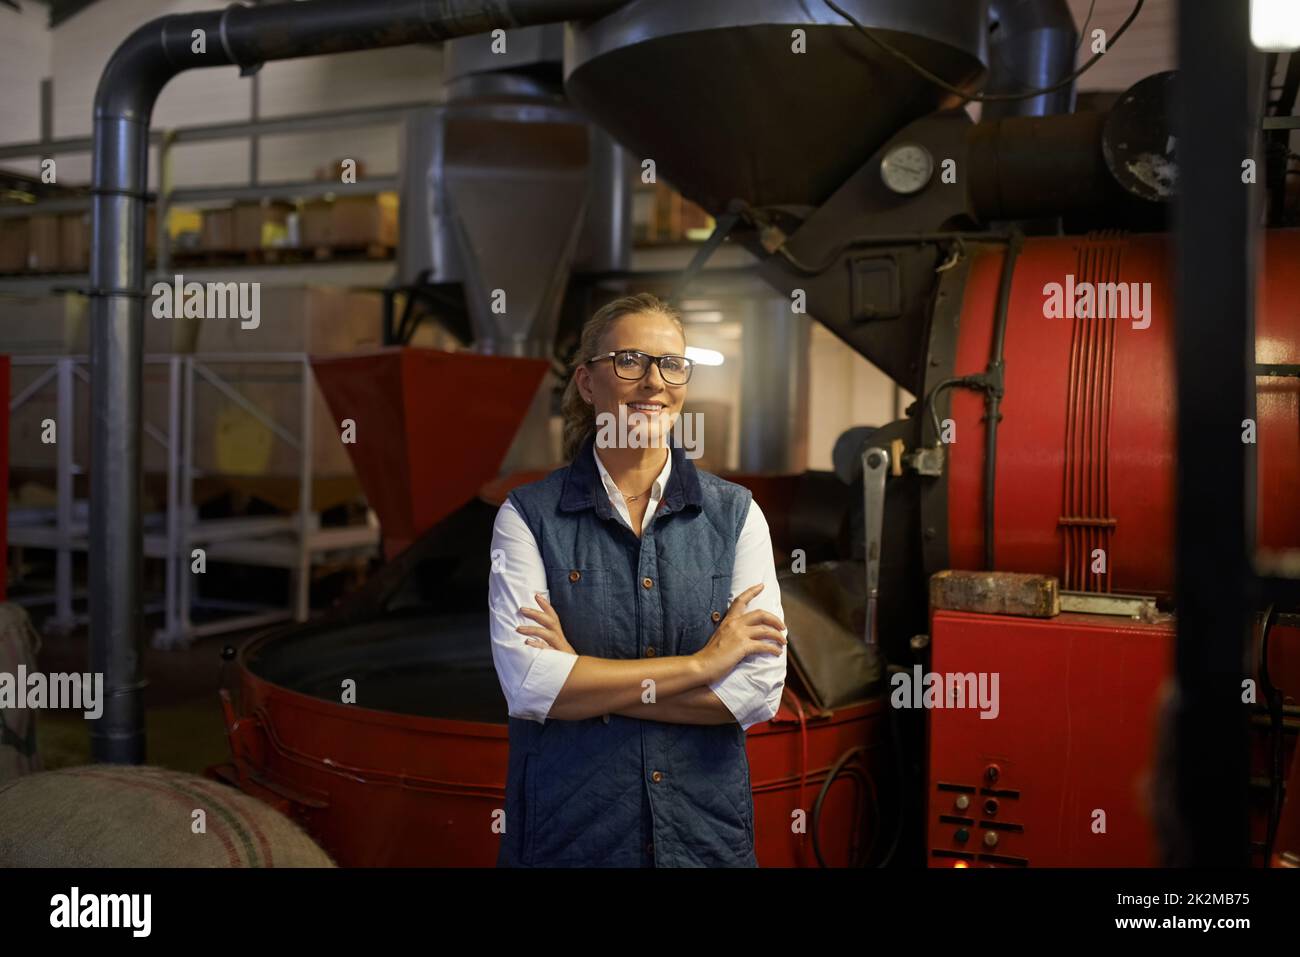 Tutta la mia giornata è una pausa caffè. Shot di un imprenditore industrioso che si pone di fronte a macchinari nel suo caffè roady. Foto Stock